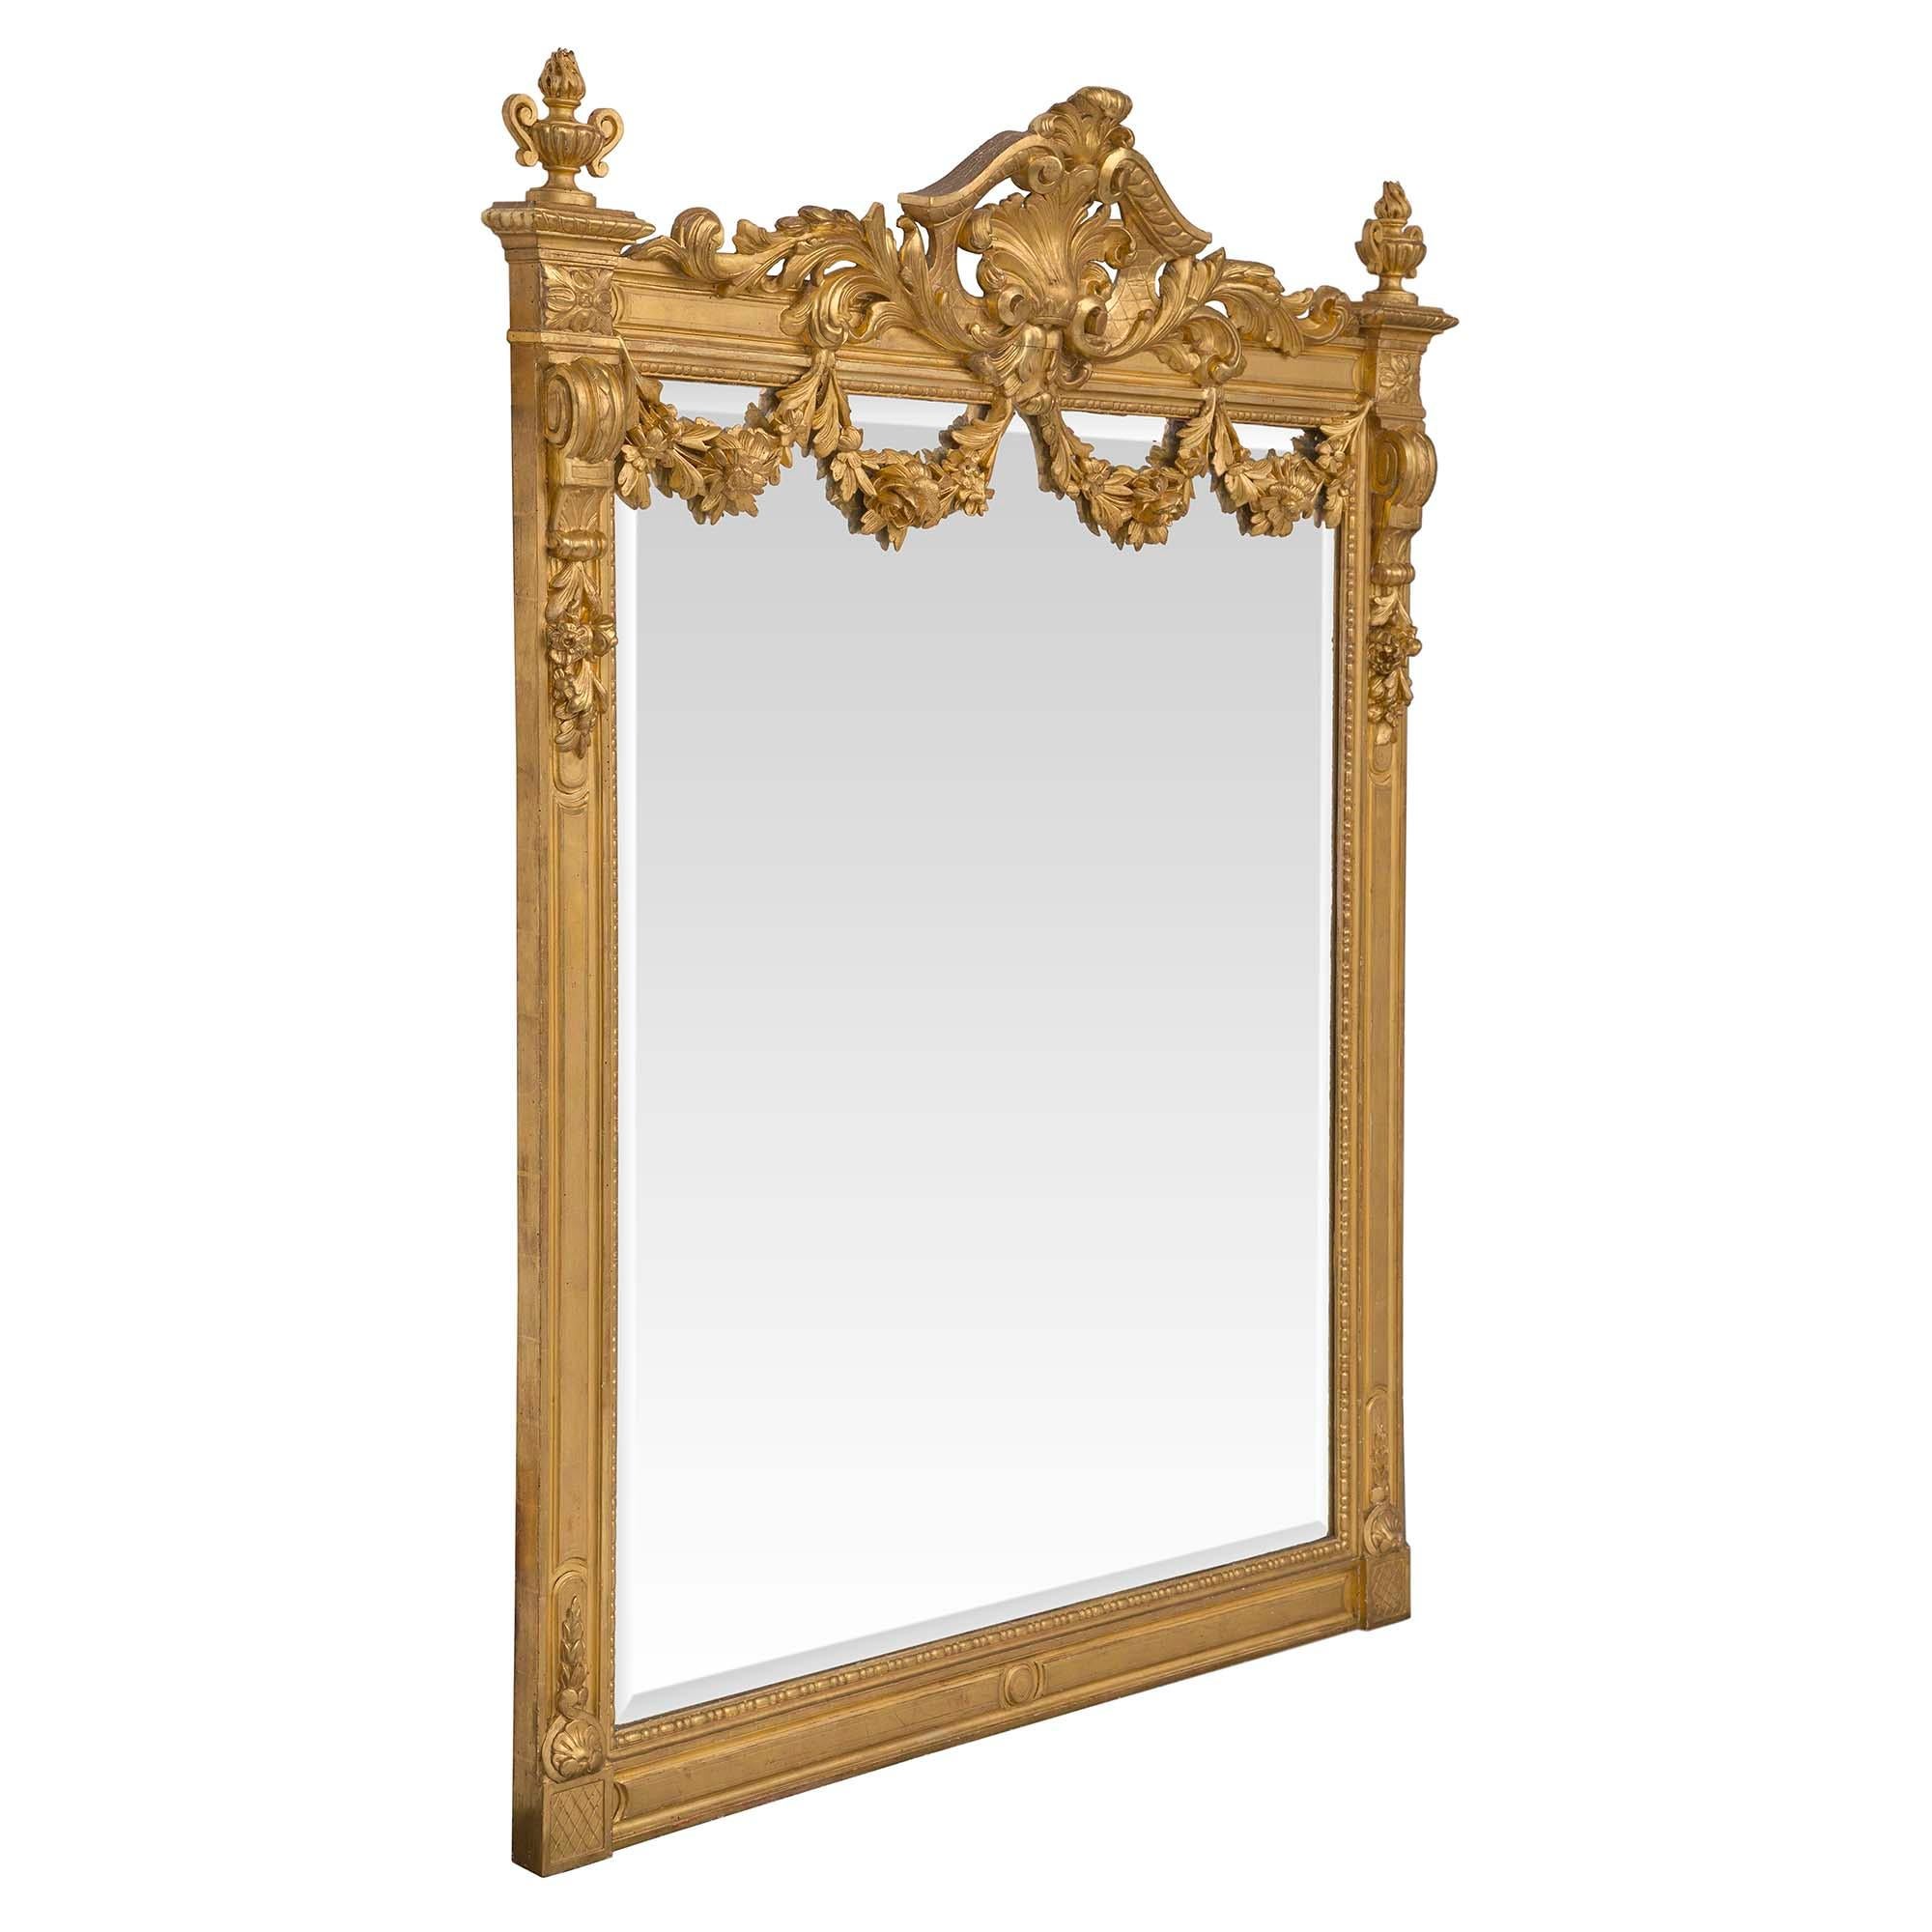 Magnifique miroir français du XIXe siècle en bois doré de style Louis XVI. La plaque de miroir biseautée d'origine est encadrée d'un motif perlé décoratif. Le cadre présente une réserve centrale à fond circulaire et des rosettes en forme de blocs à